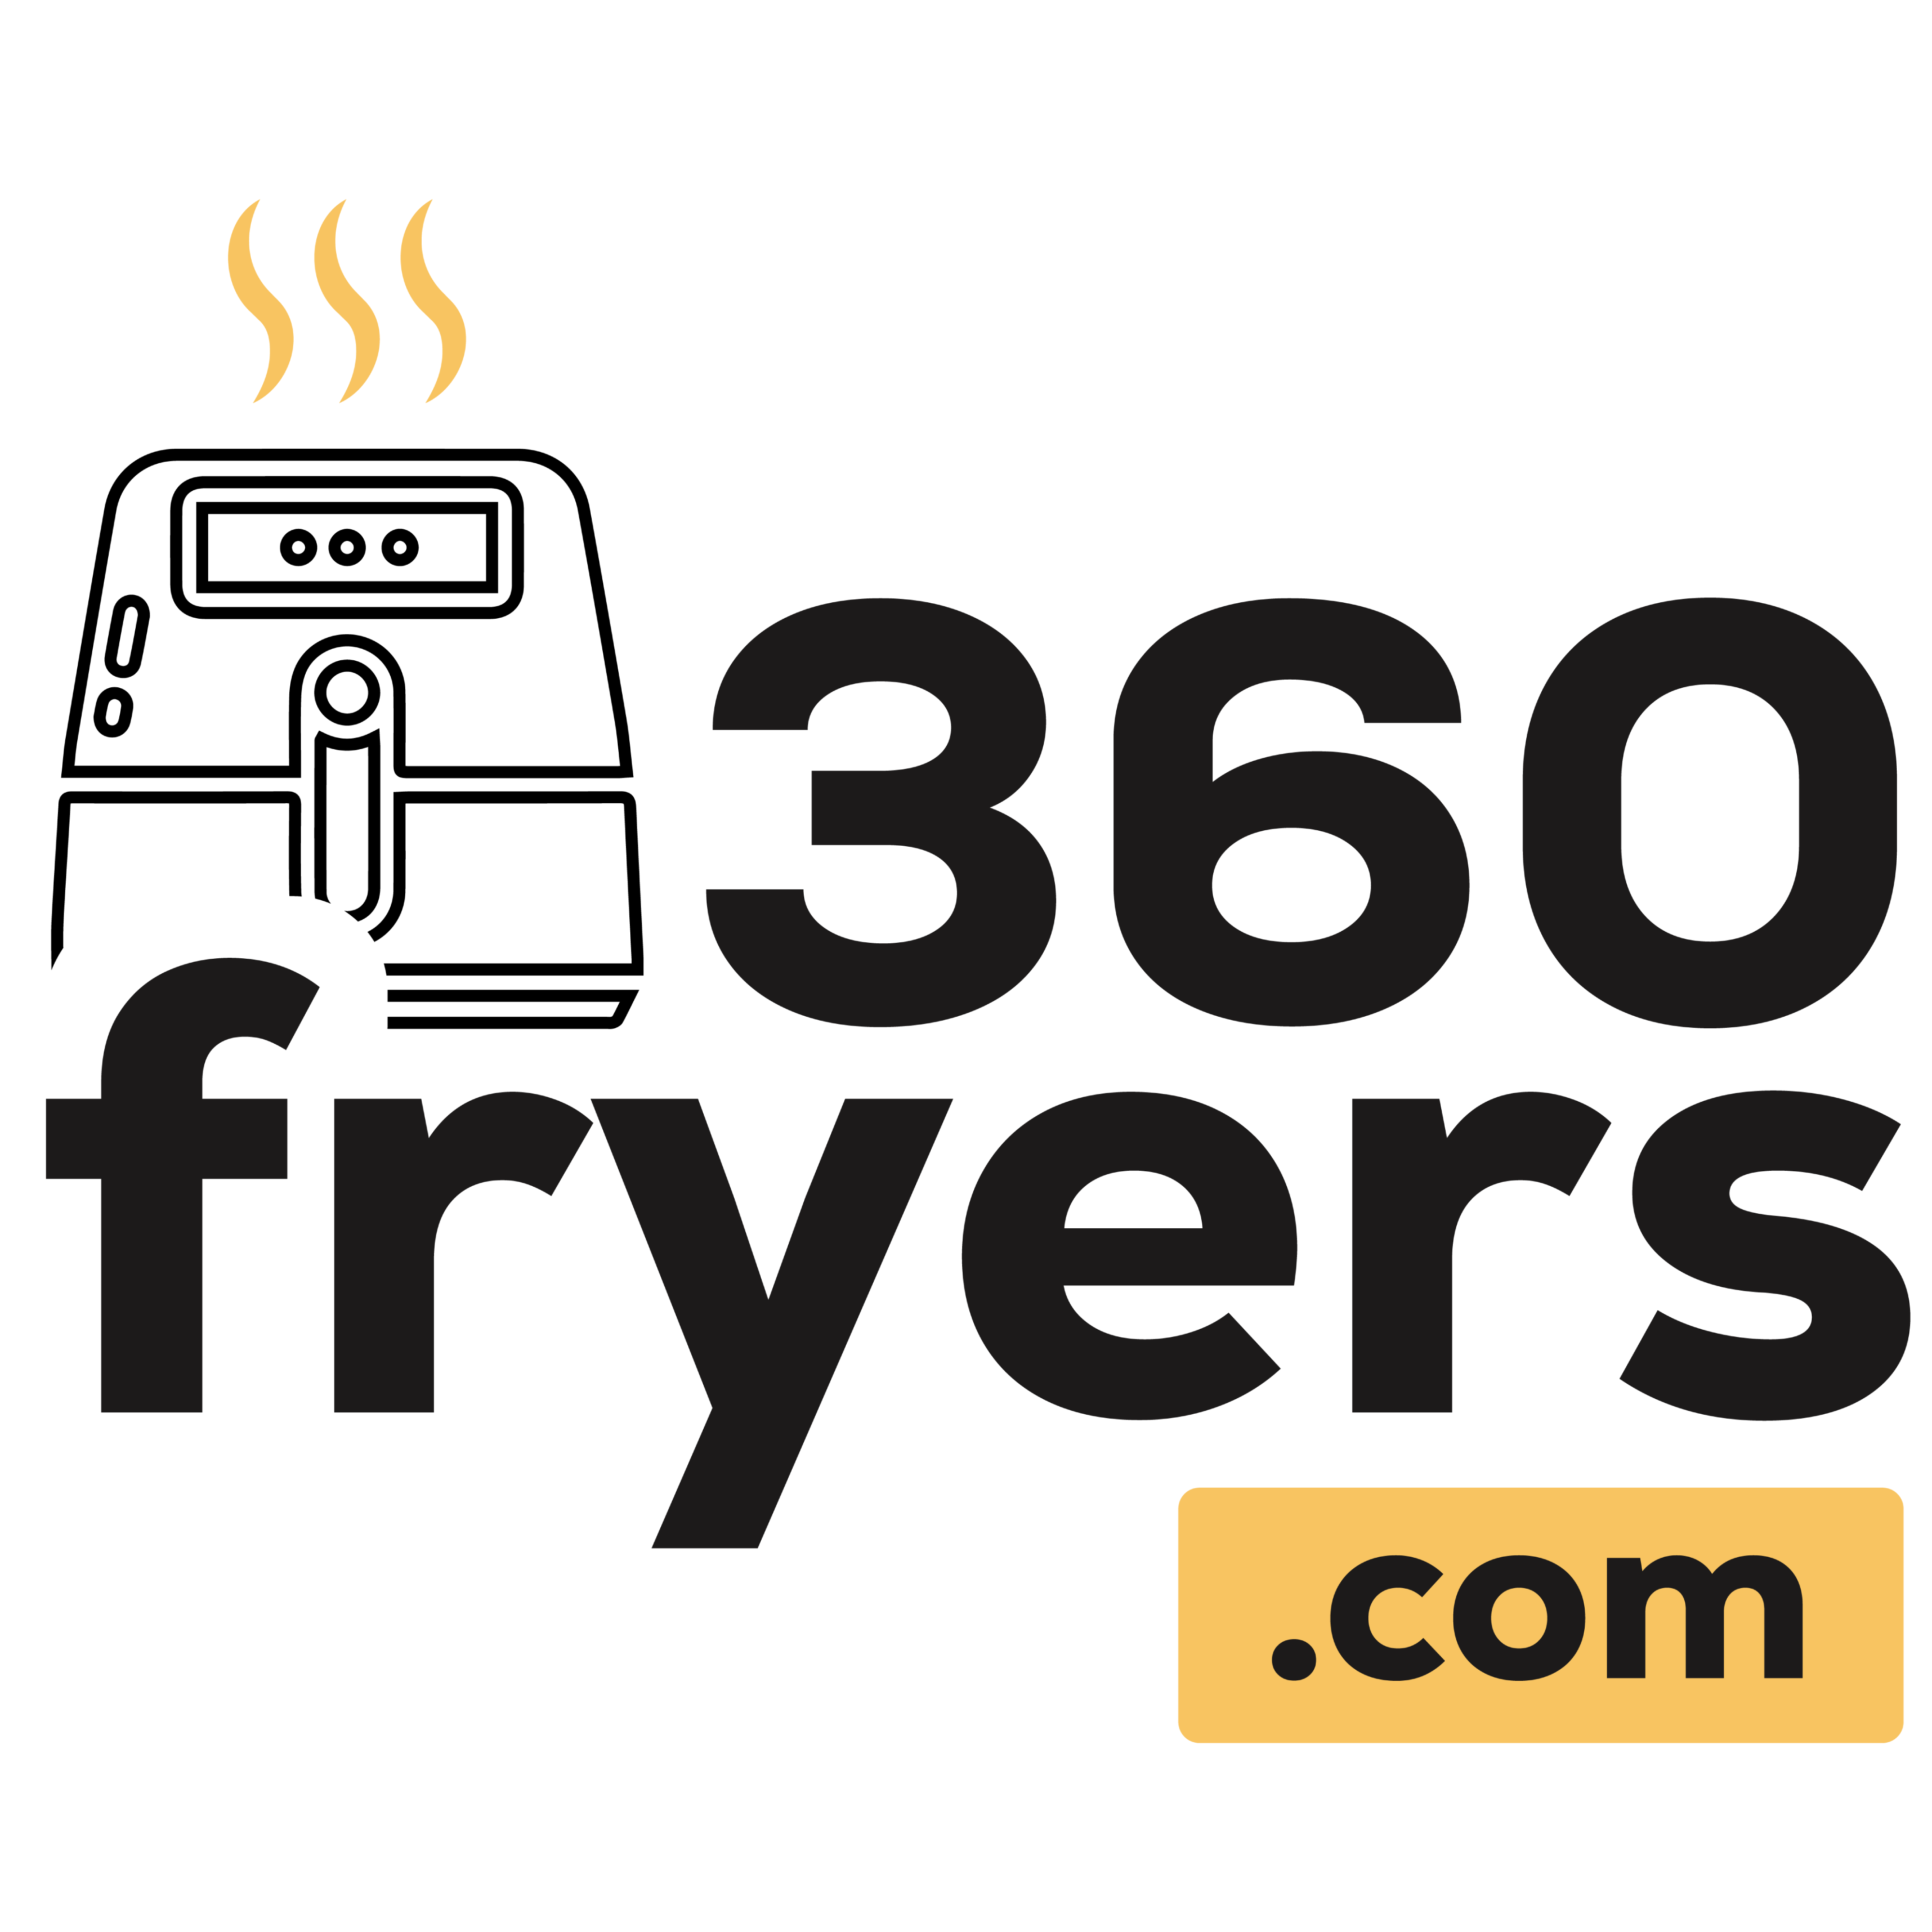 360 Fryers